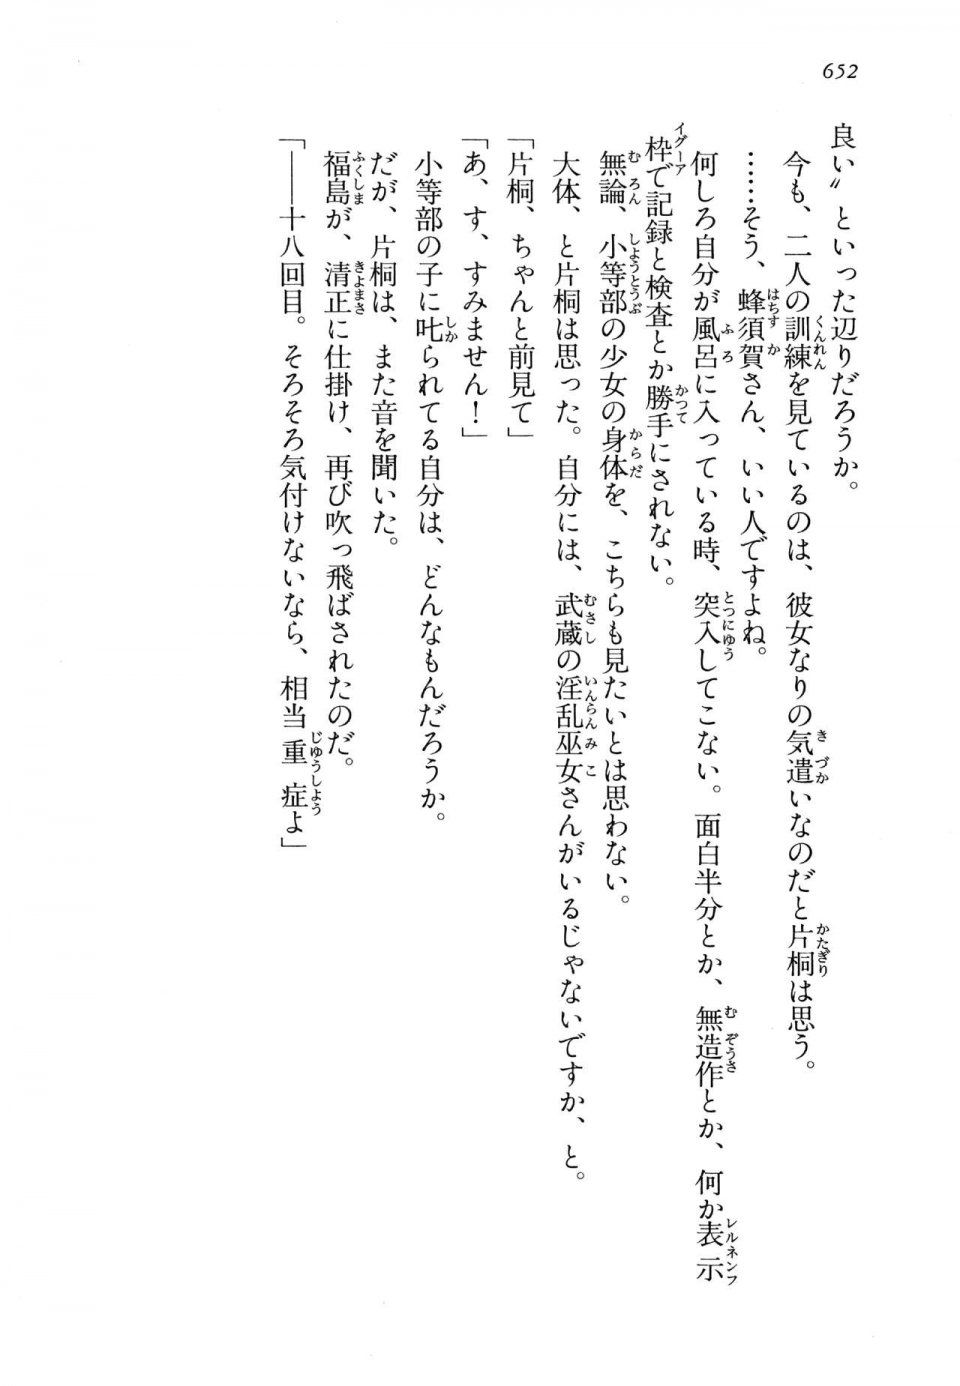 Kyoukai Senjou no Horizon LN Vol 14(6B) - Photo #652